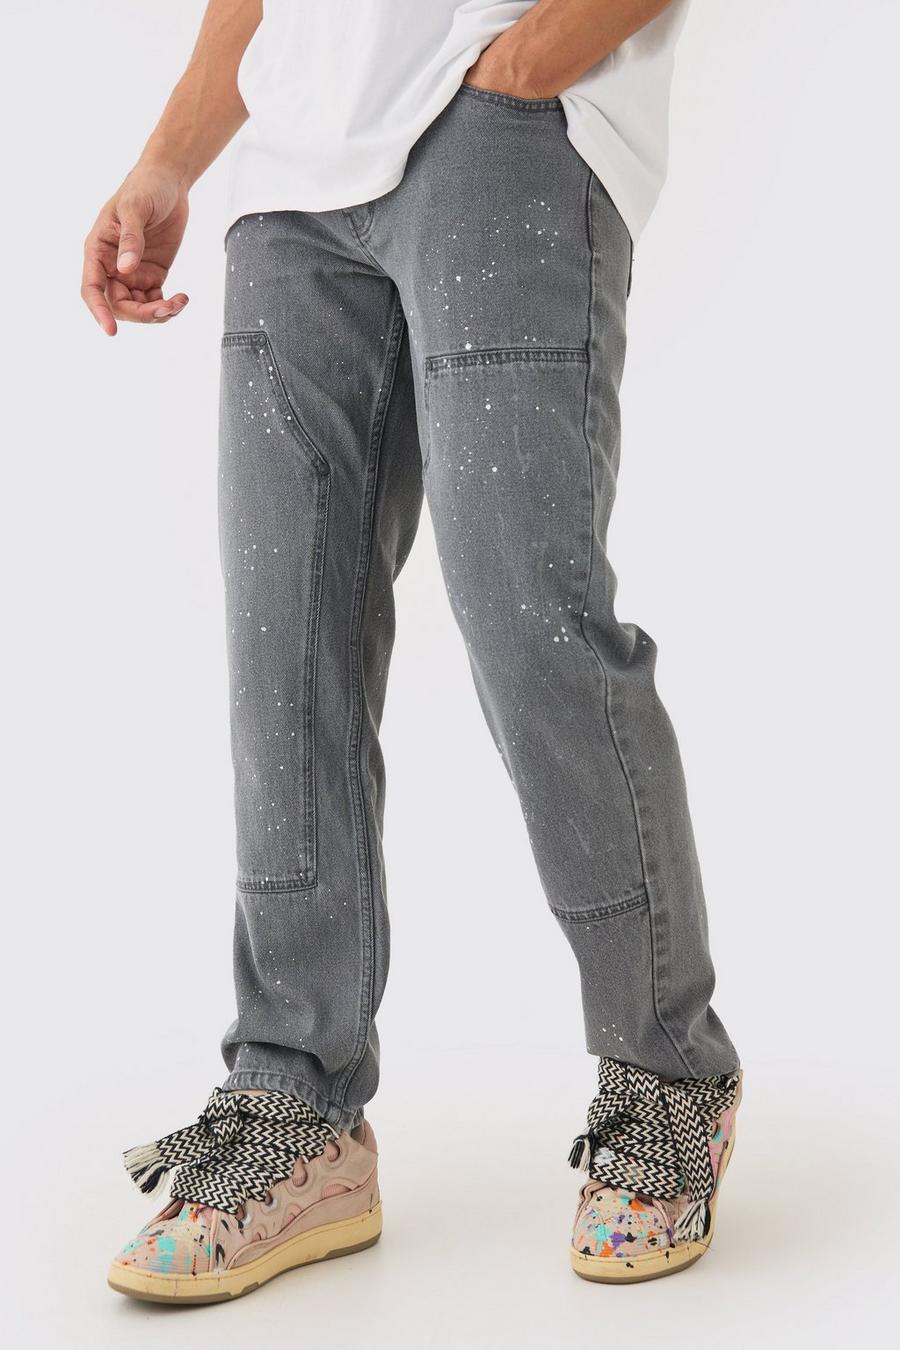 Lockere Jeans mit Farbspritzern, Grey